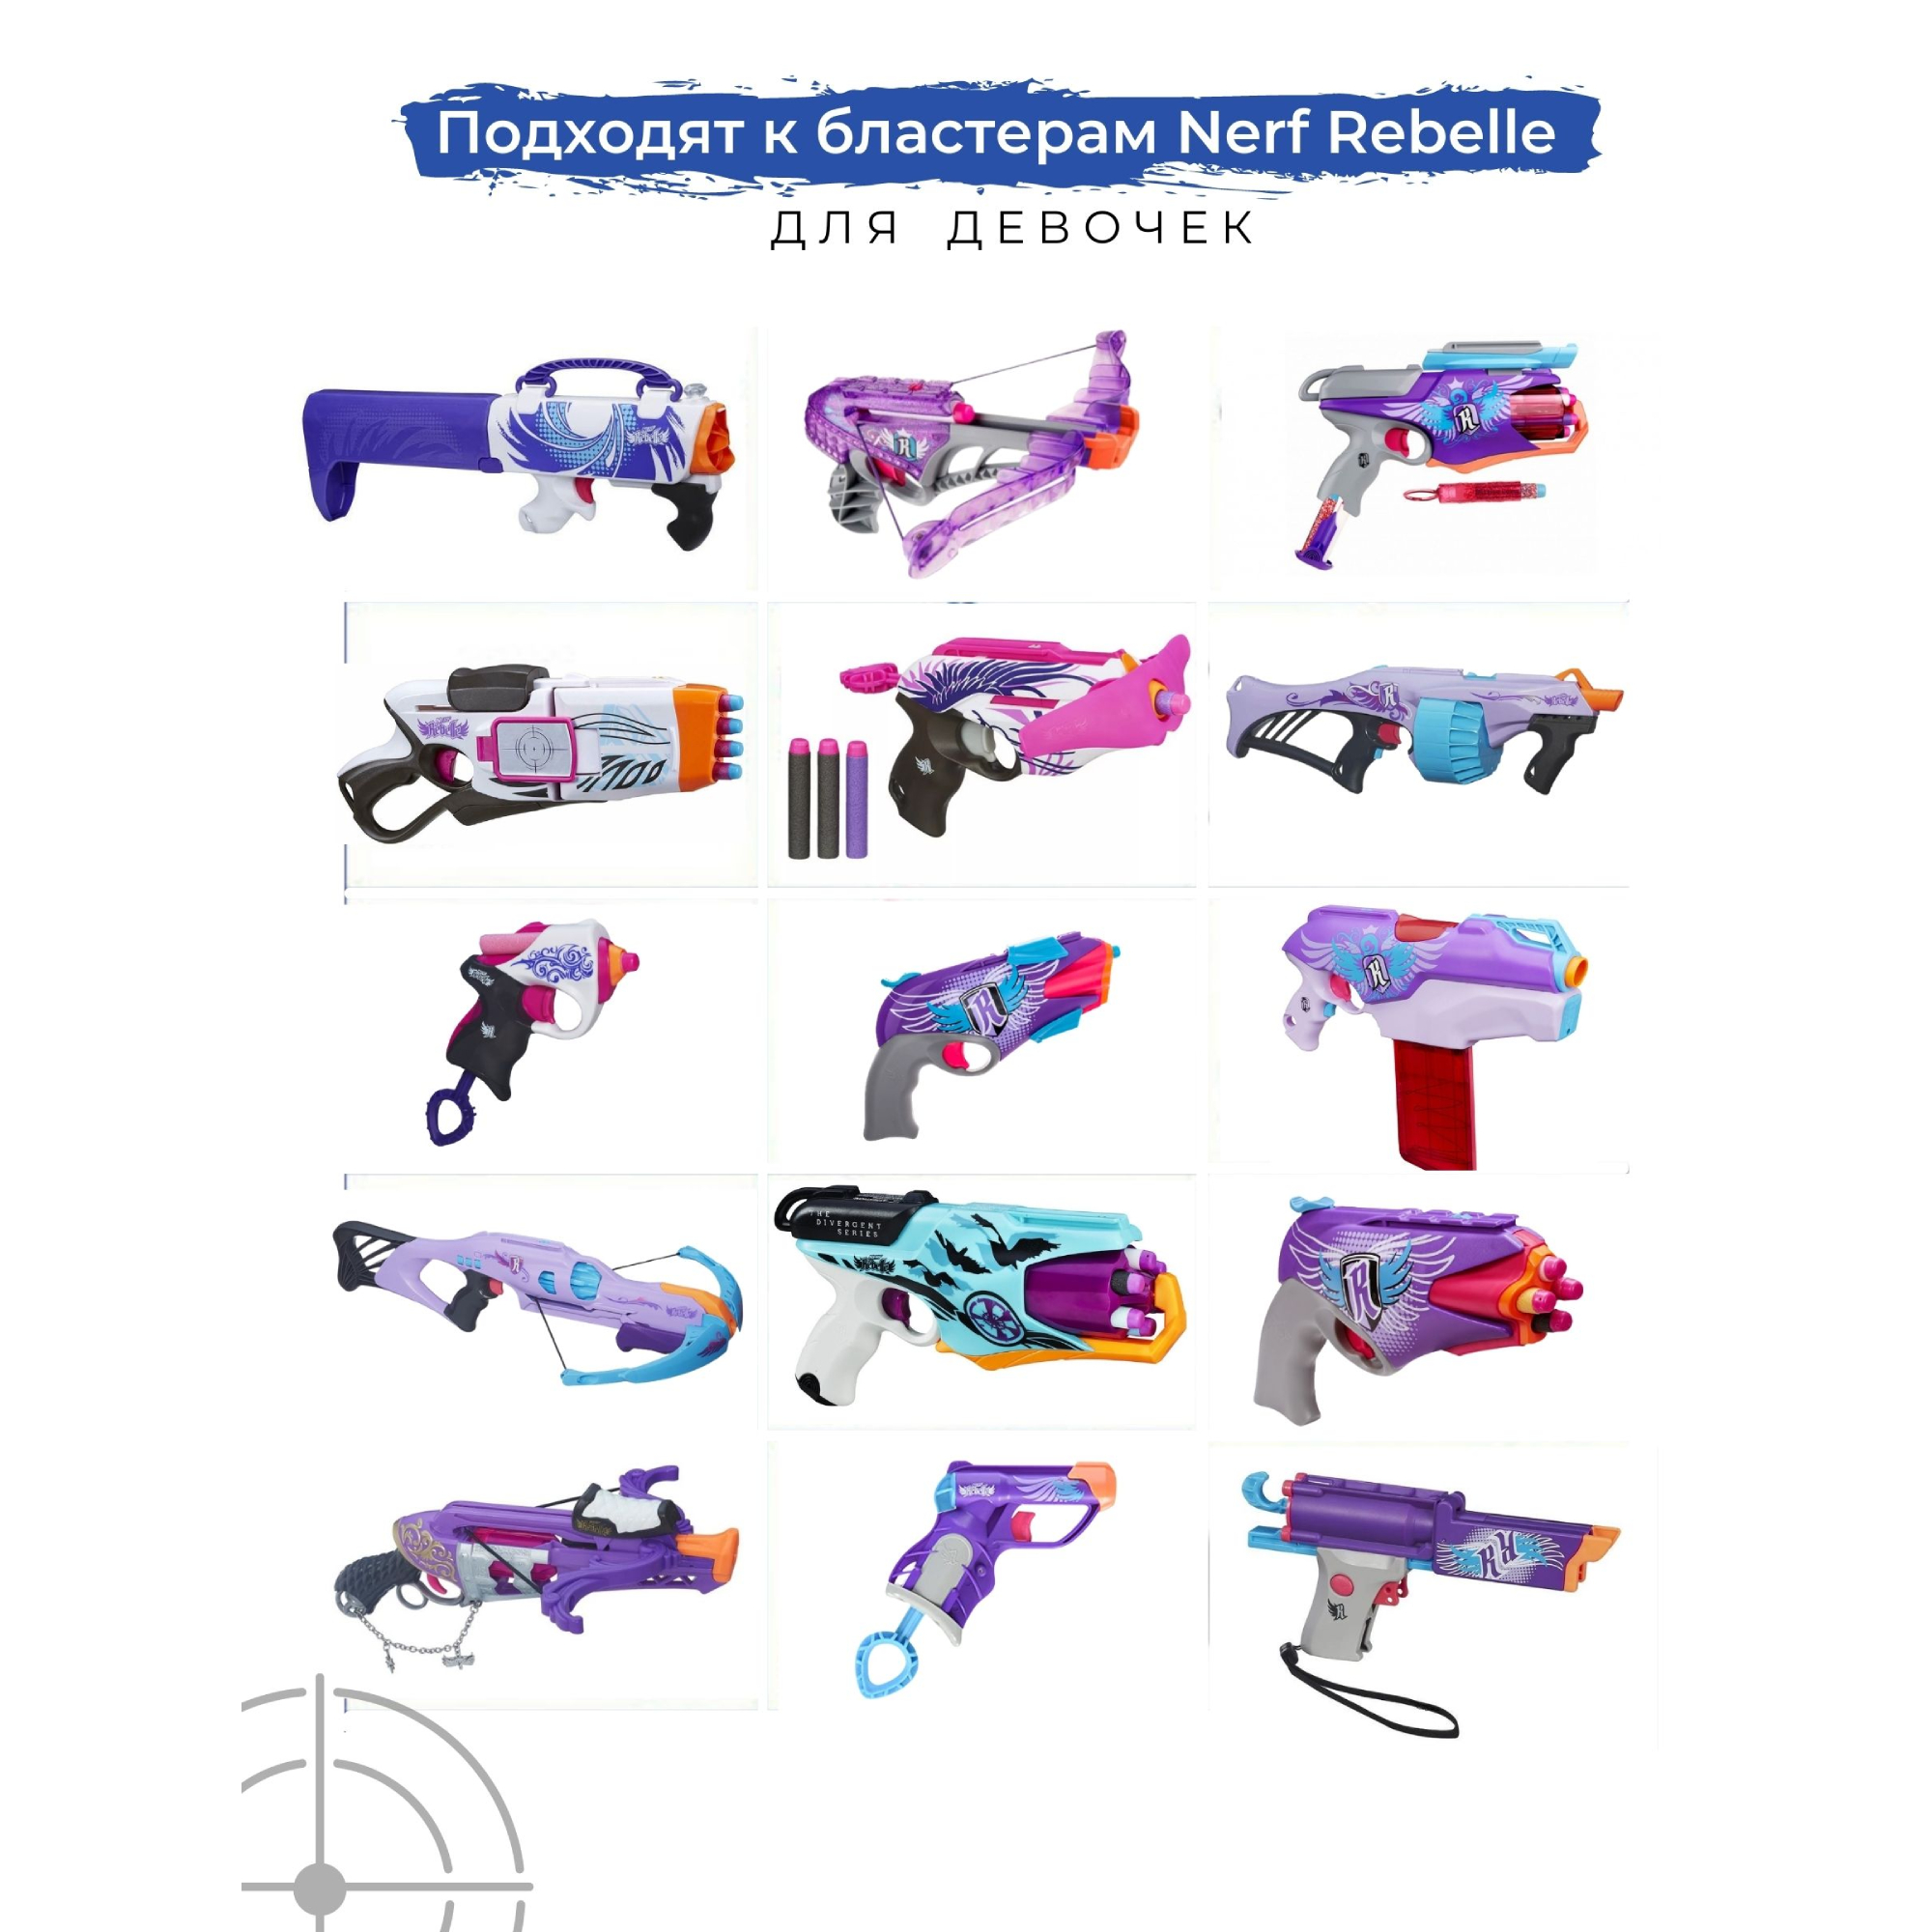 Патроны мягкие X-Treme Shooter с силиконовым наконечником для бластеров Nerf Rebelle игрушечного оружия Нерф Ребель 20 шт - фото 2